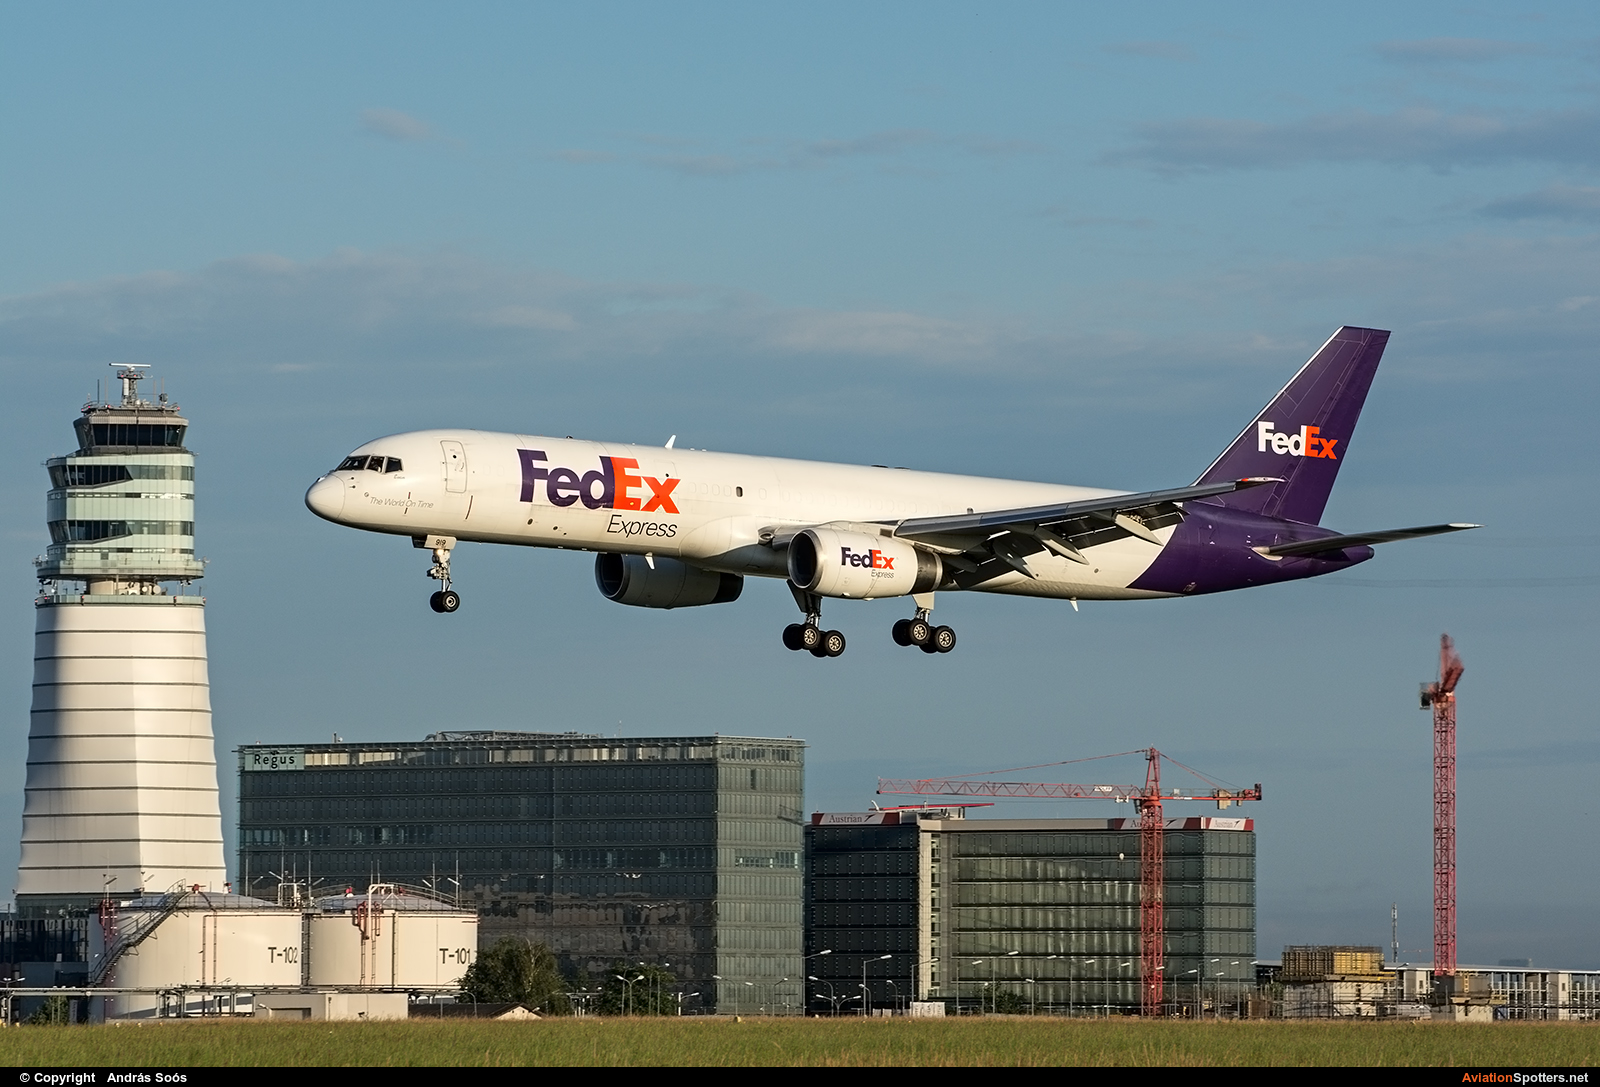 FedEx Federal Express  -  757-200F  (N919FD) By András Soós (sas1965)